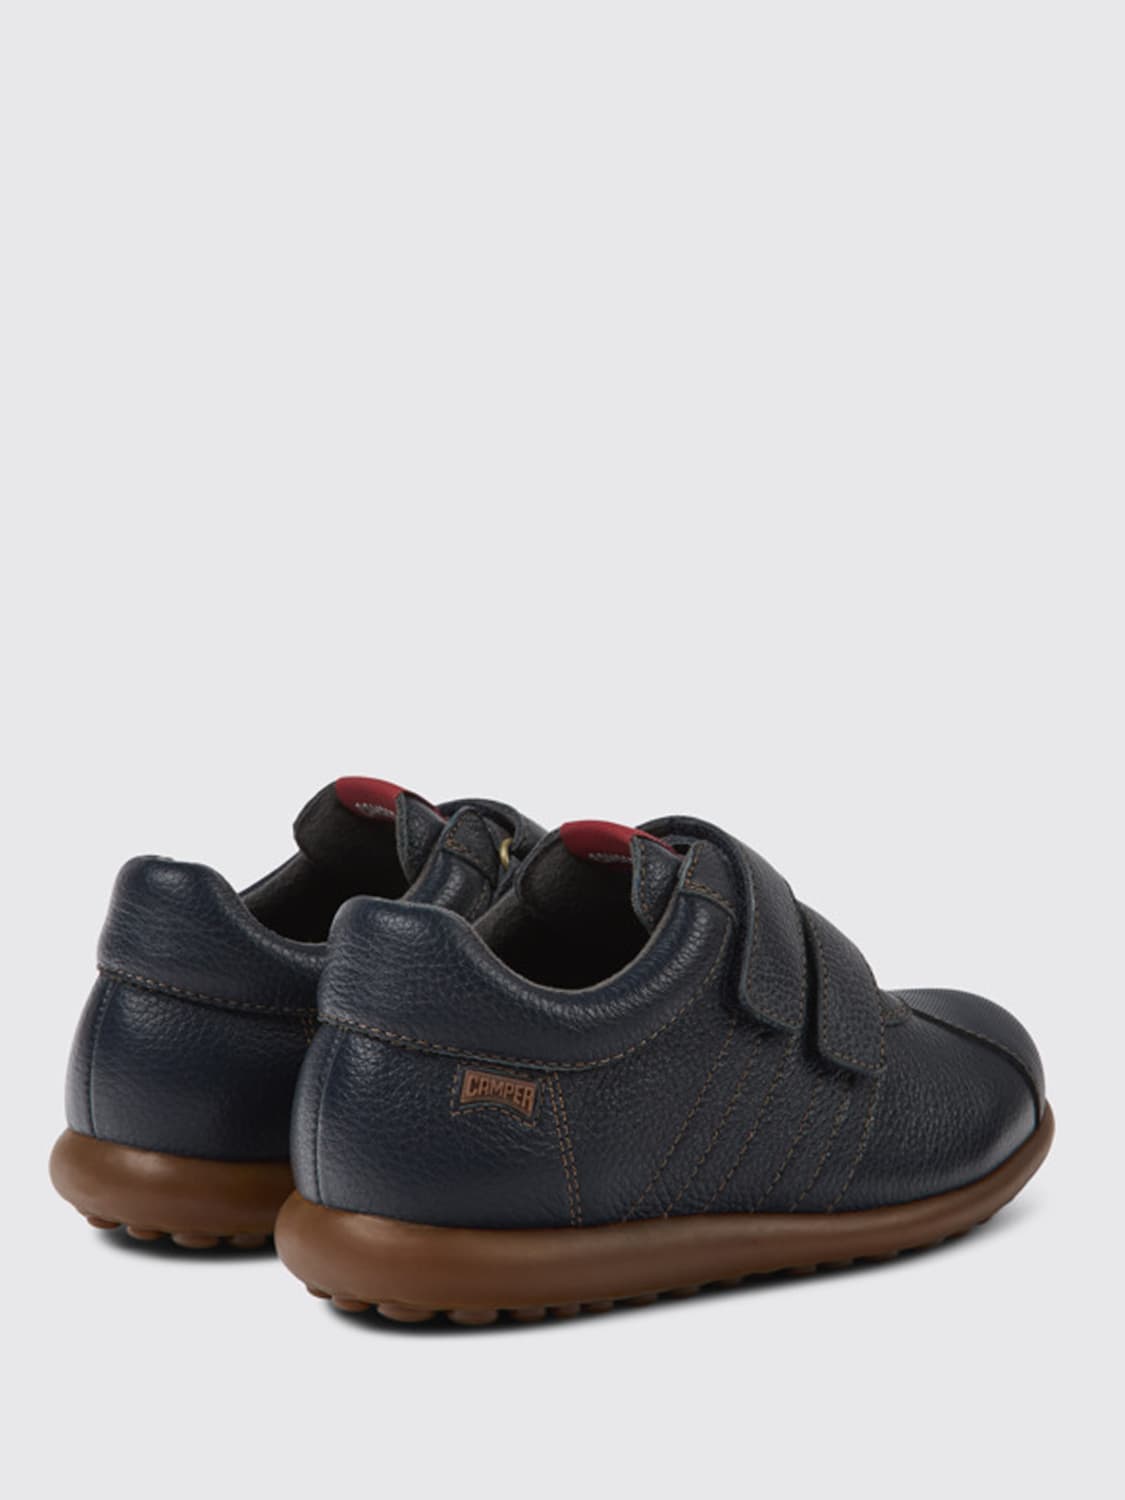 Outlet de Camper: Zapatos para niño, Azul Oscuro  Zapatos Camper 80353-043  PELOTAS en línea en